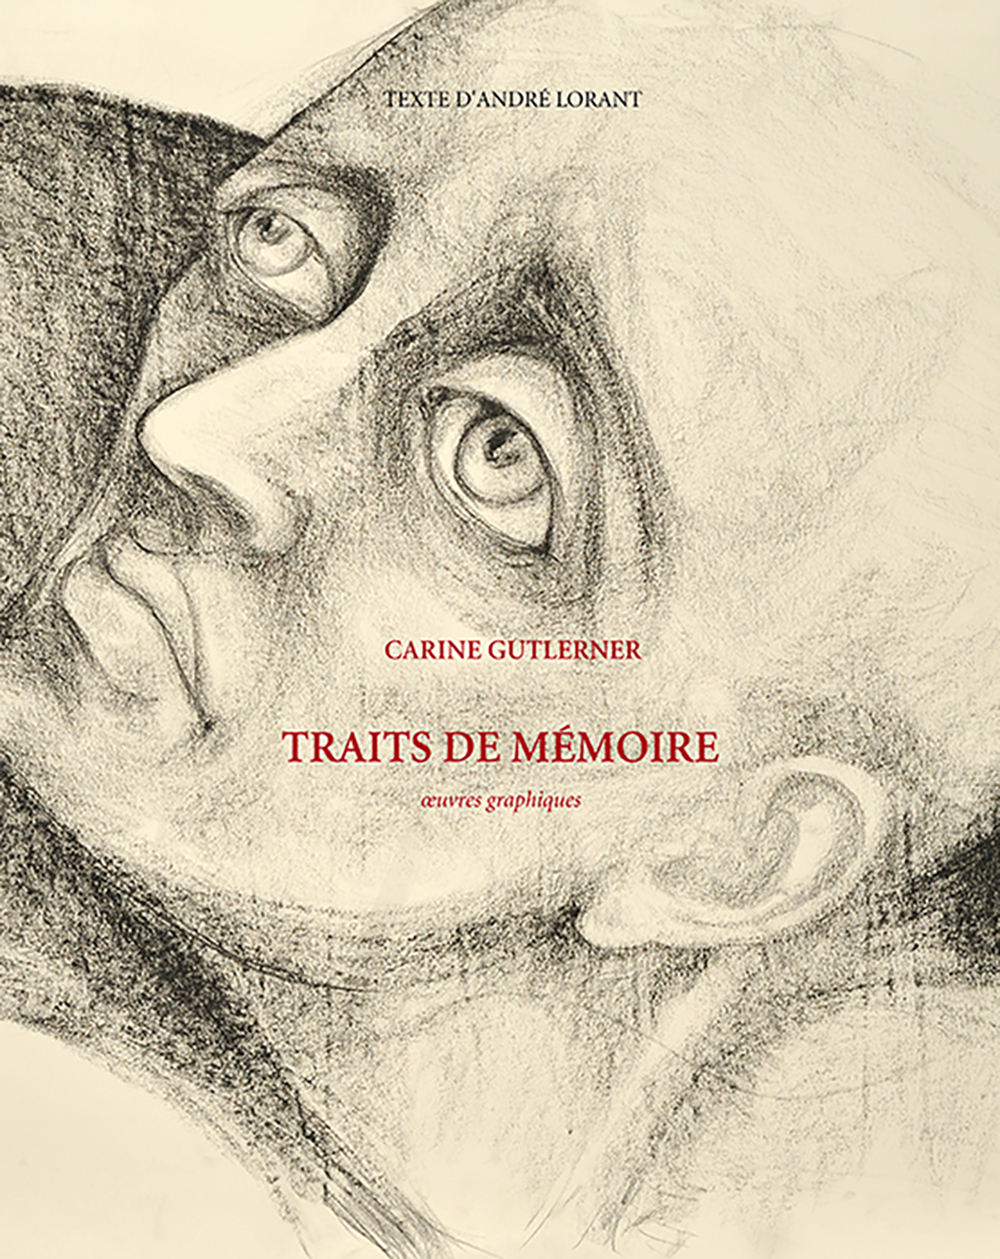 CARINE GUTLERNER. TRAITS DE MÉMOIRE